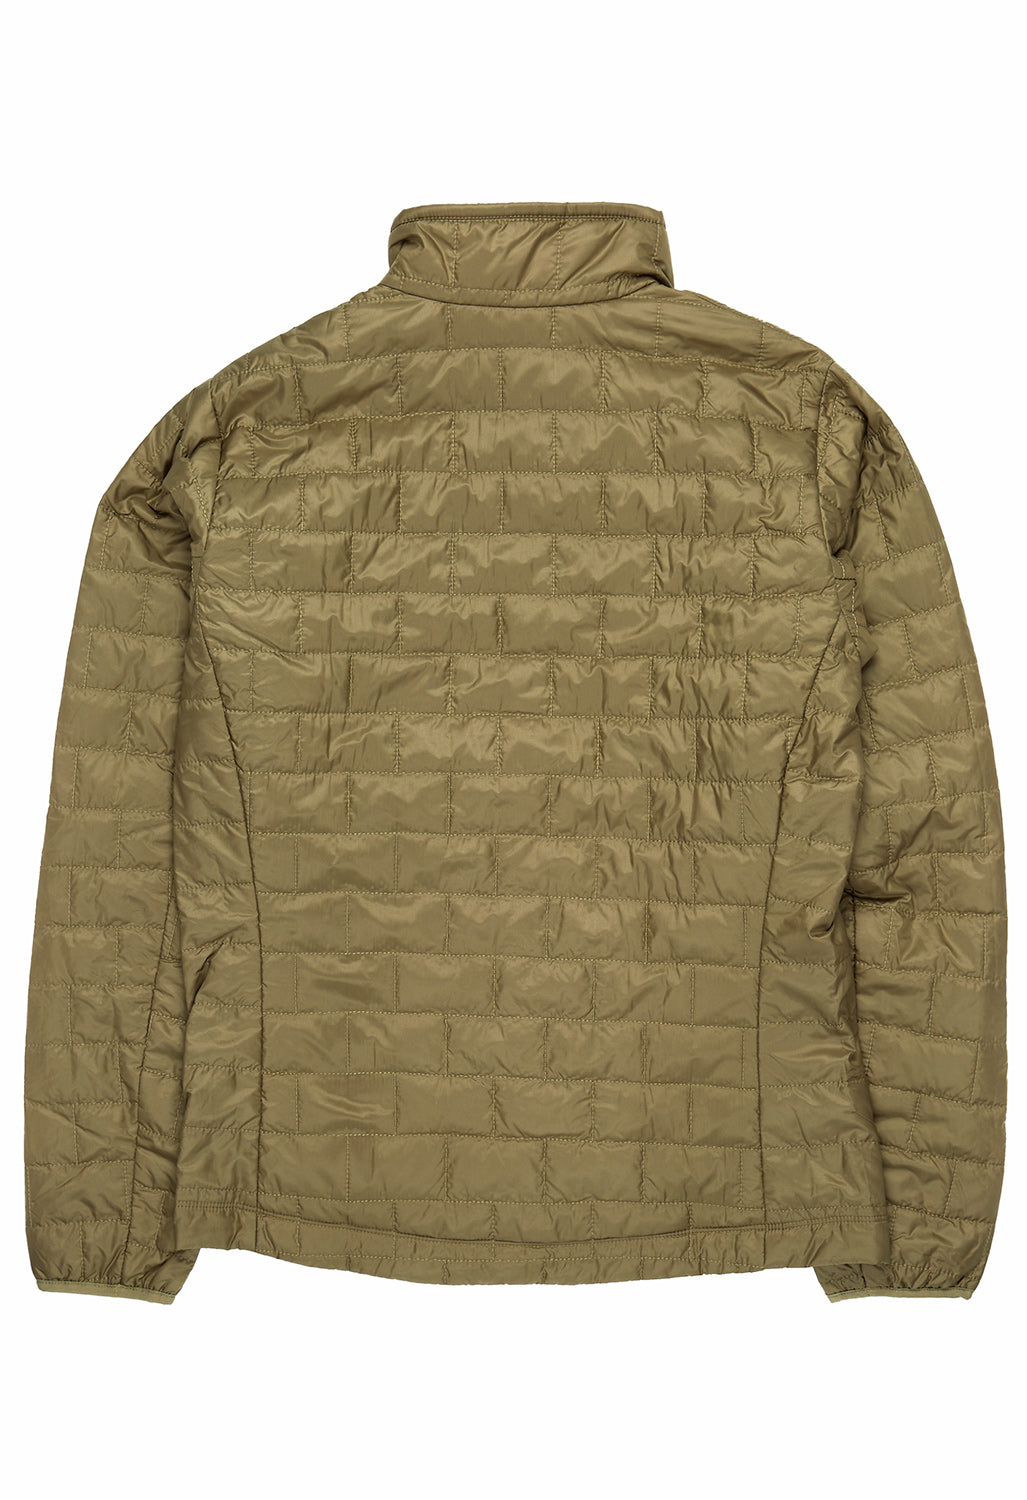 Patagonia Men's Nano Puff Jacket - Sage Khaki